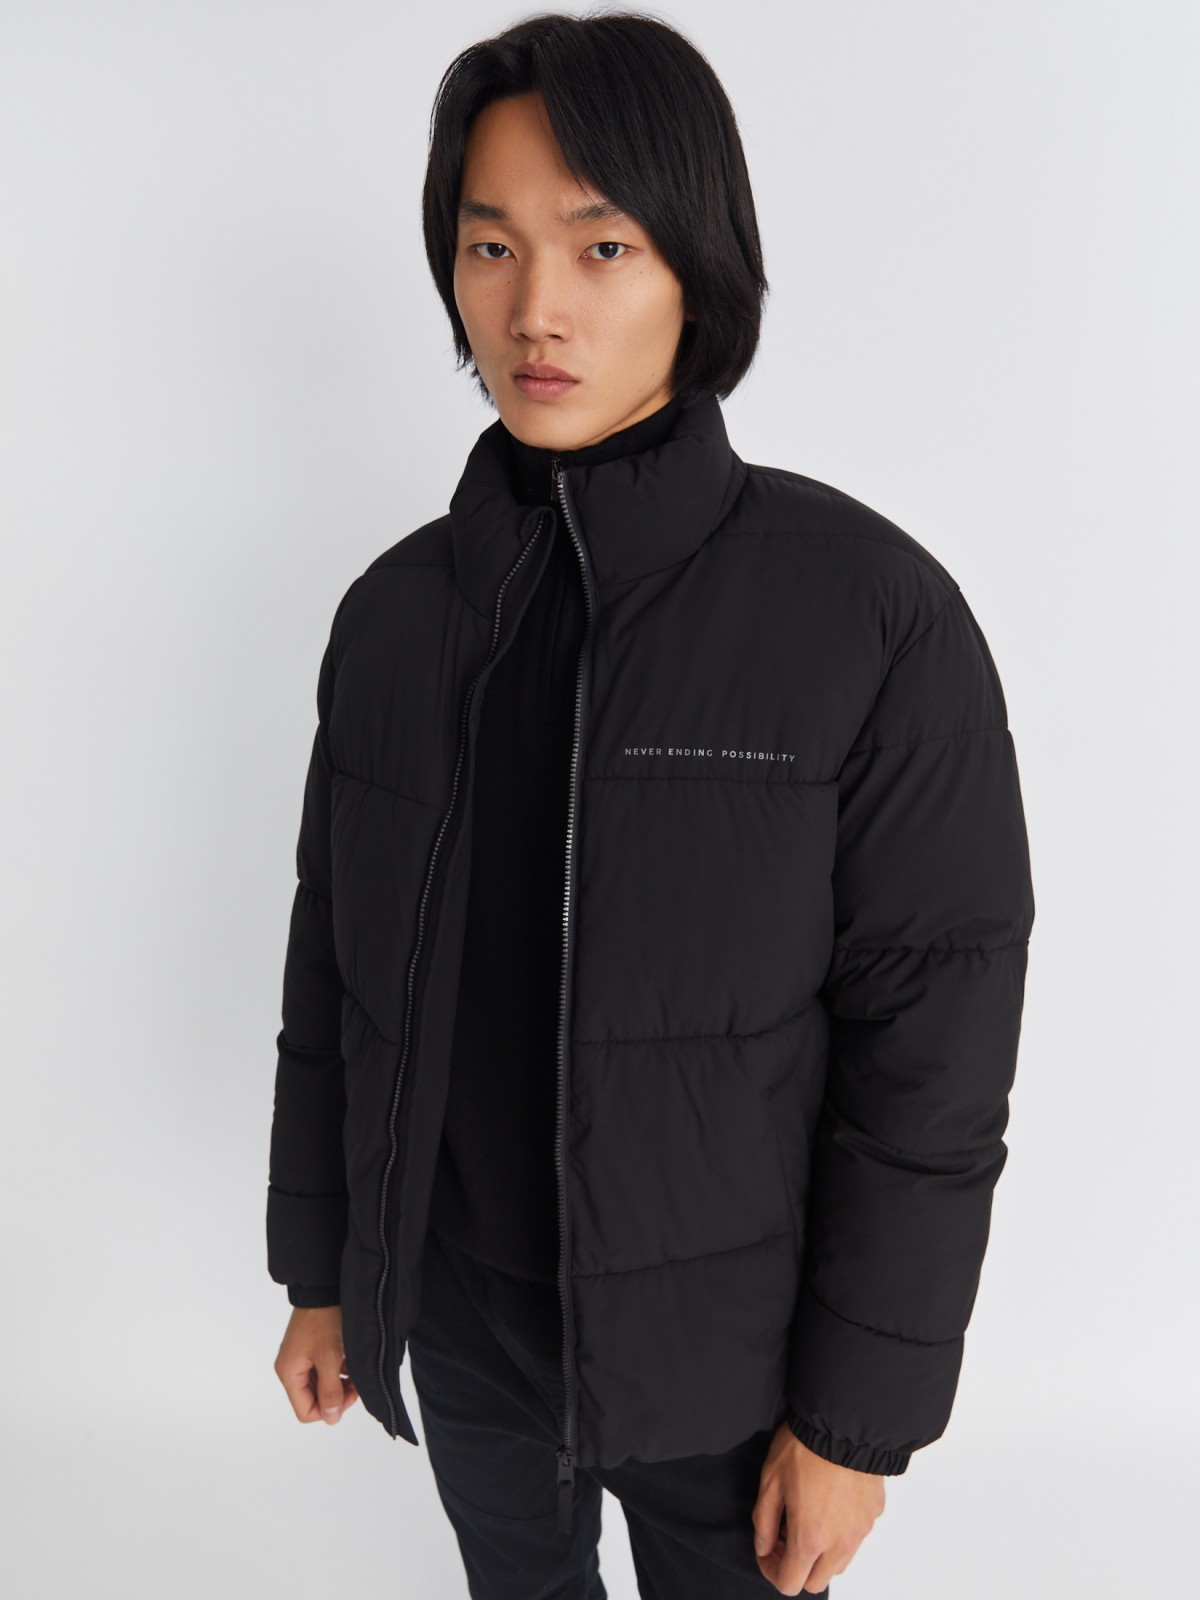 Тёплая стёганая куртка на молнии с воротником-стойкой zolla 01334510L134, цвет черный, размер S - фото 1